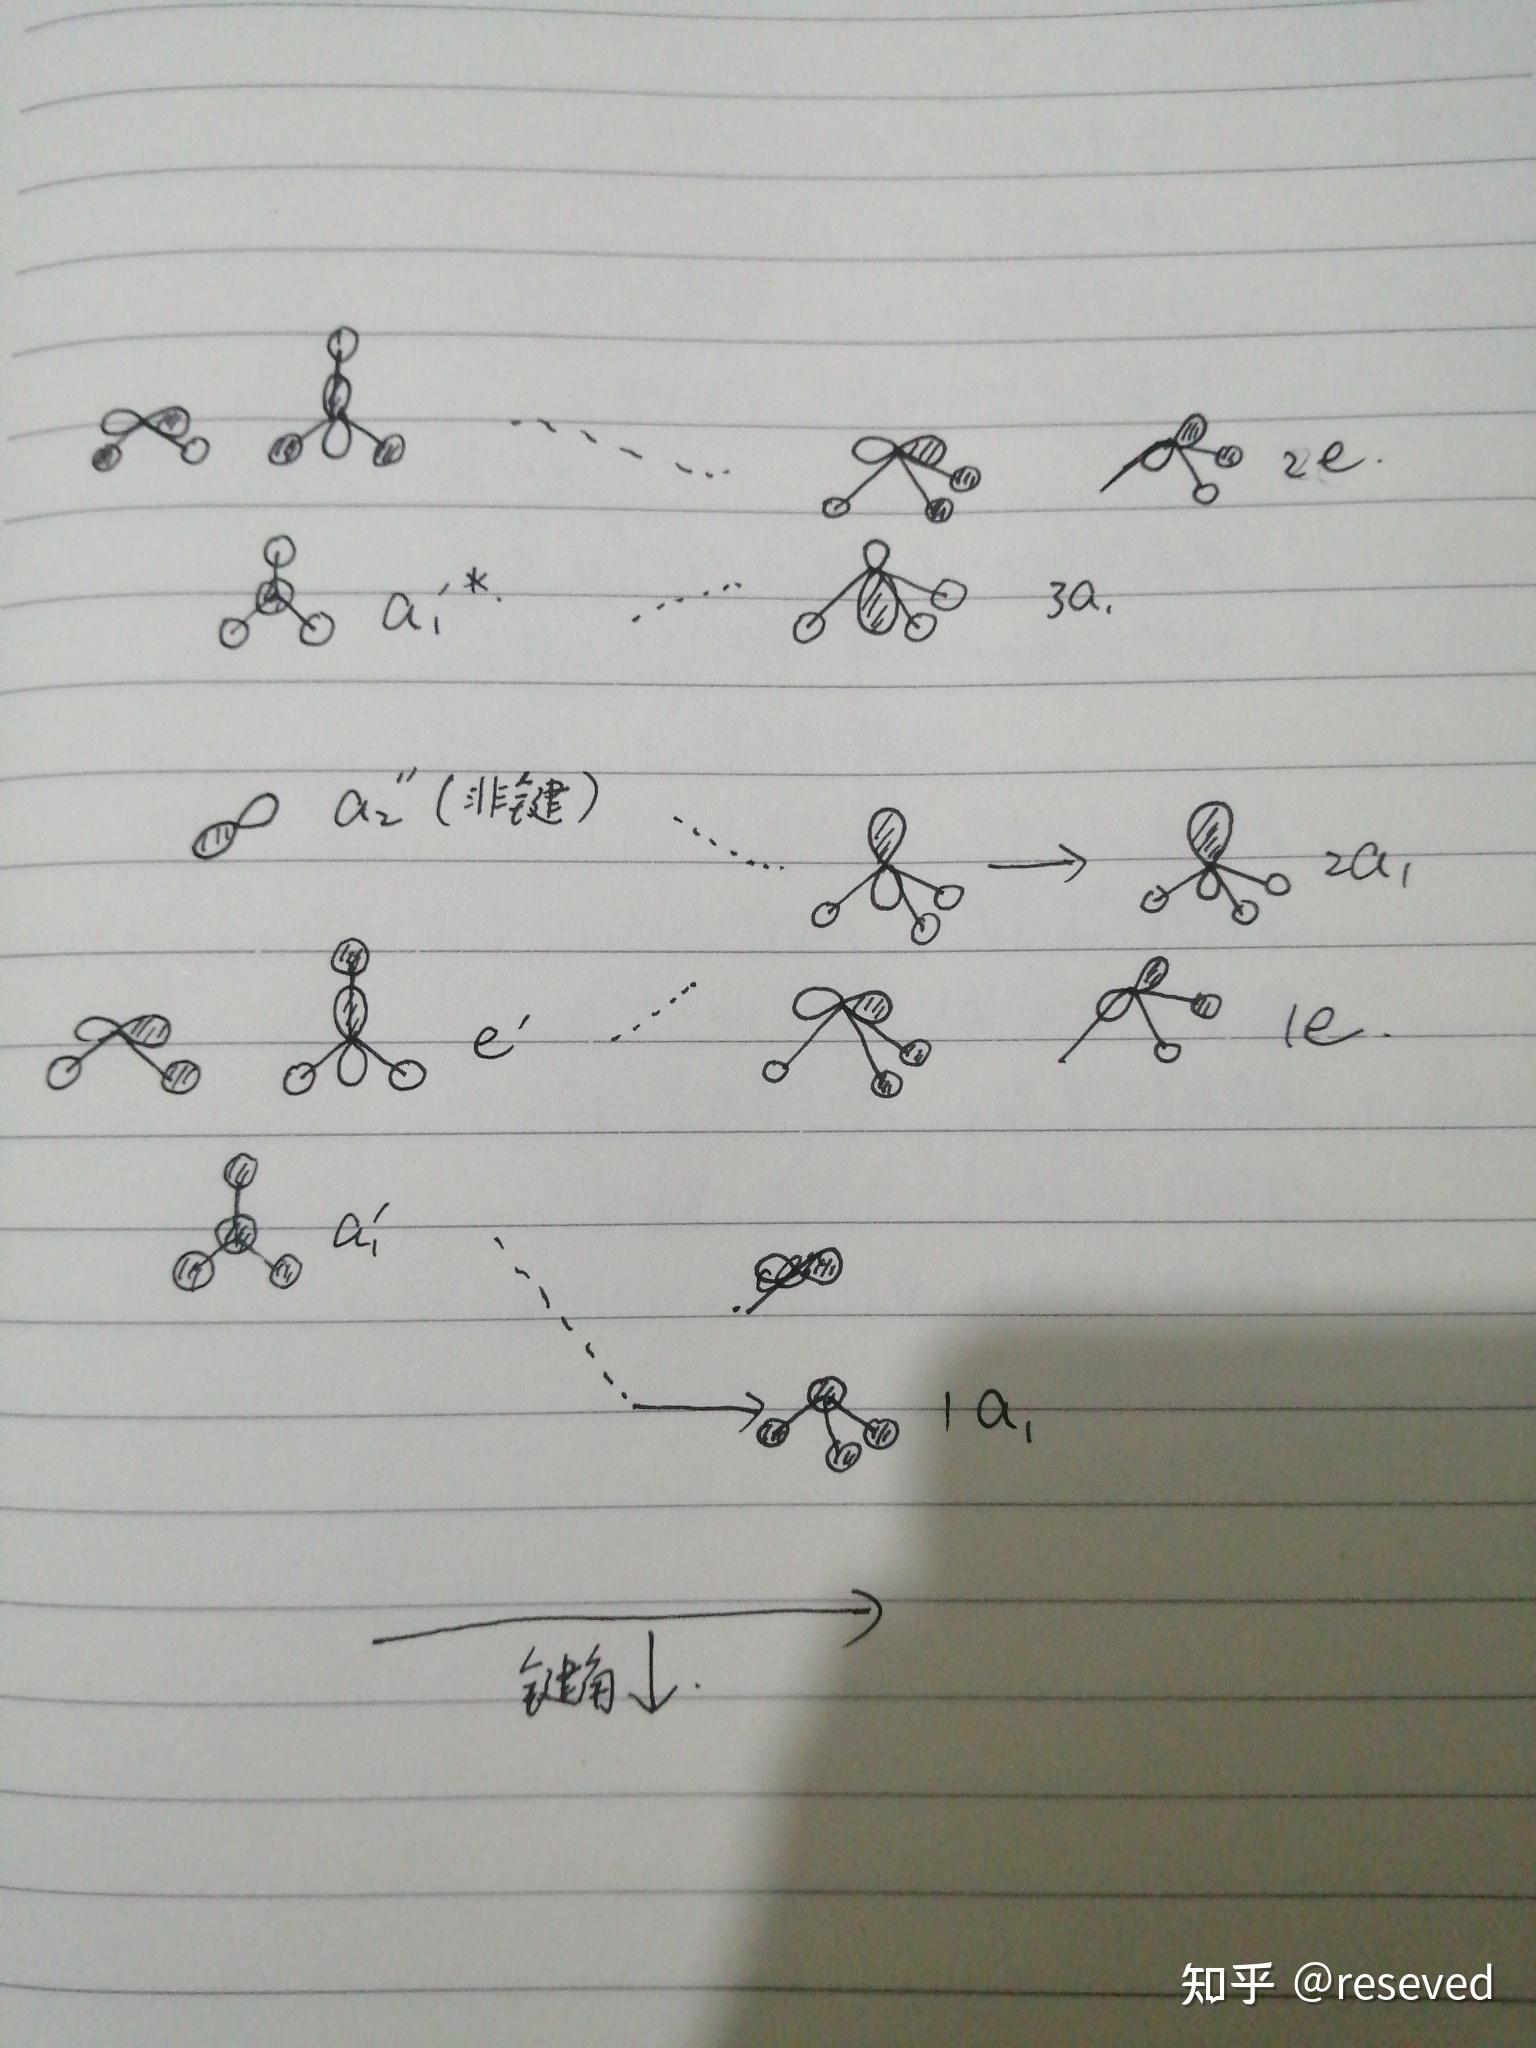 三氟化氮的分子轨道能级图怎么画? 